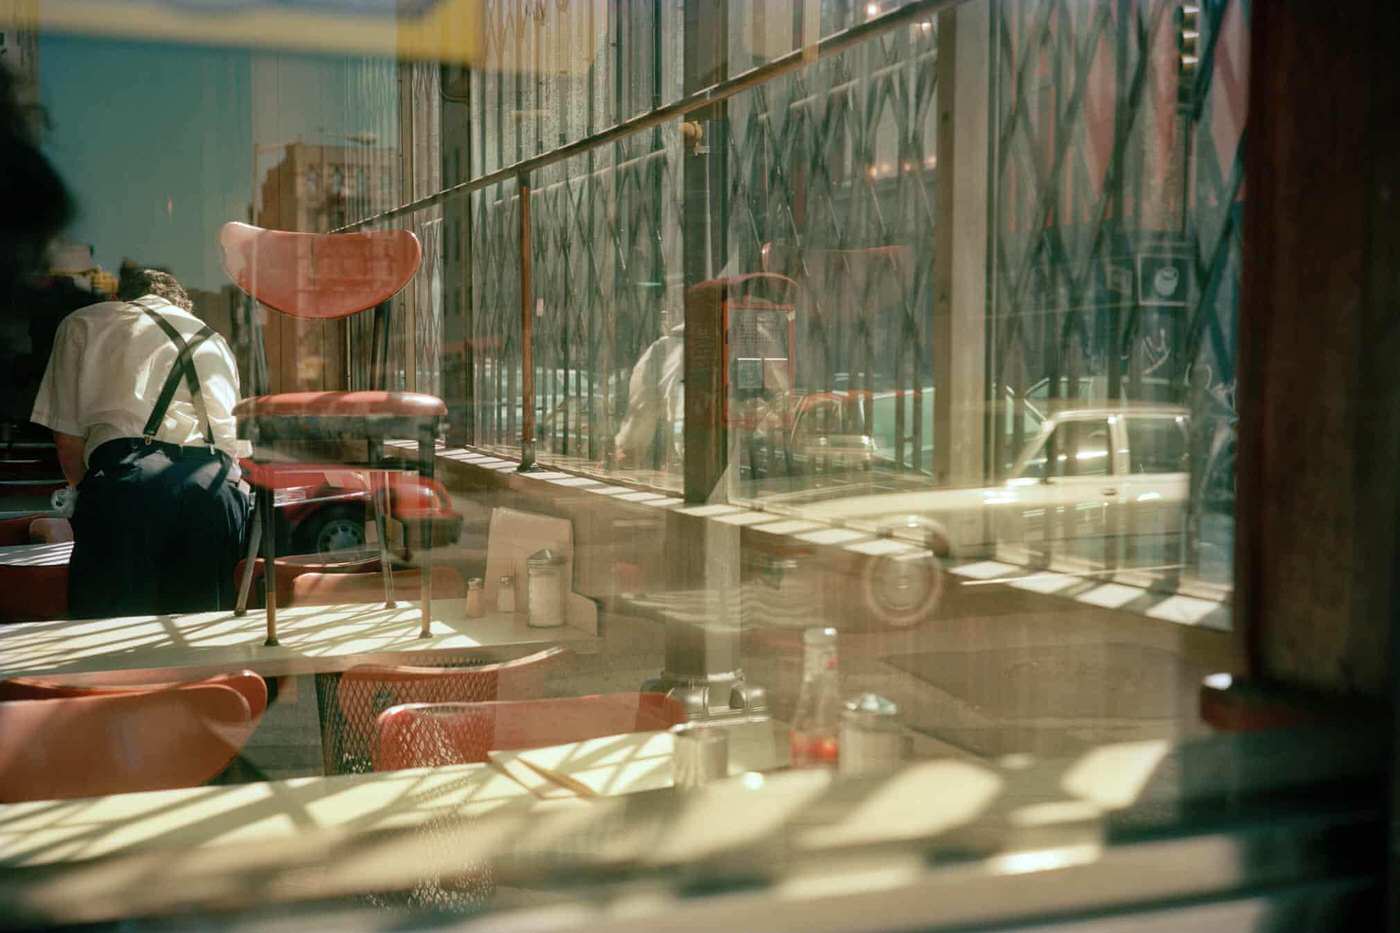 Diner Window, 1989